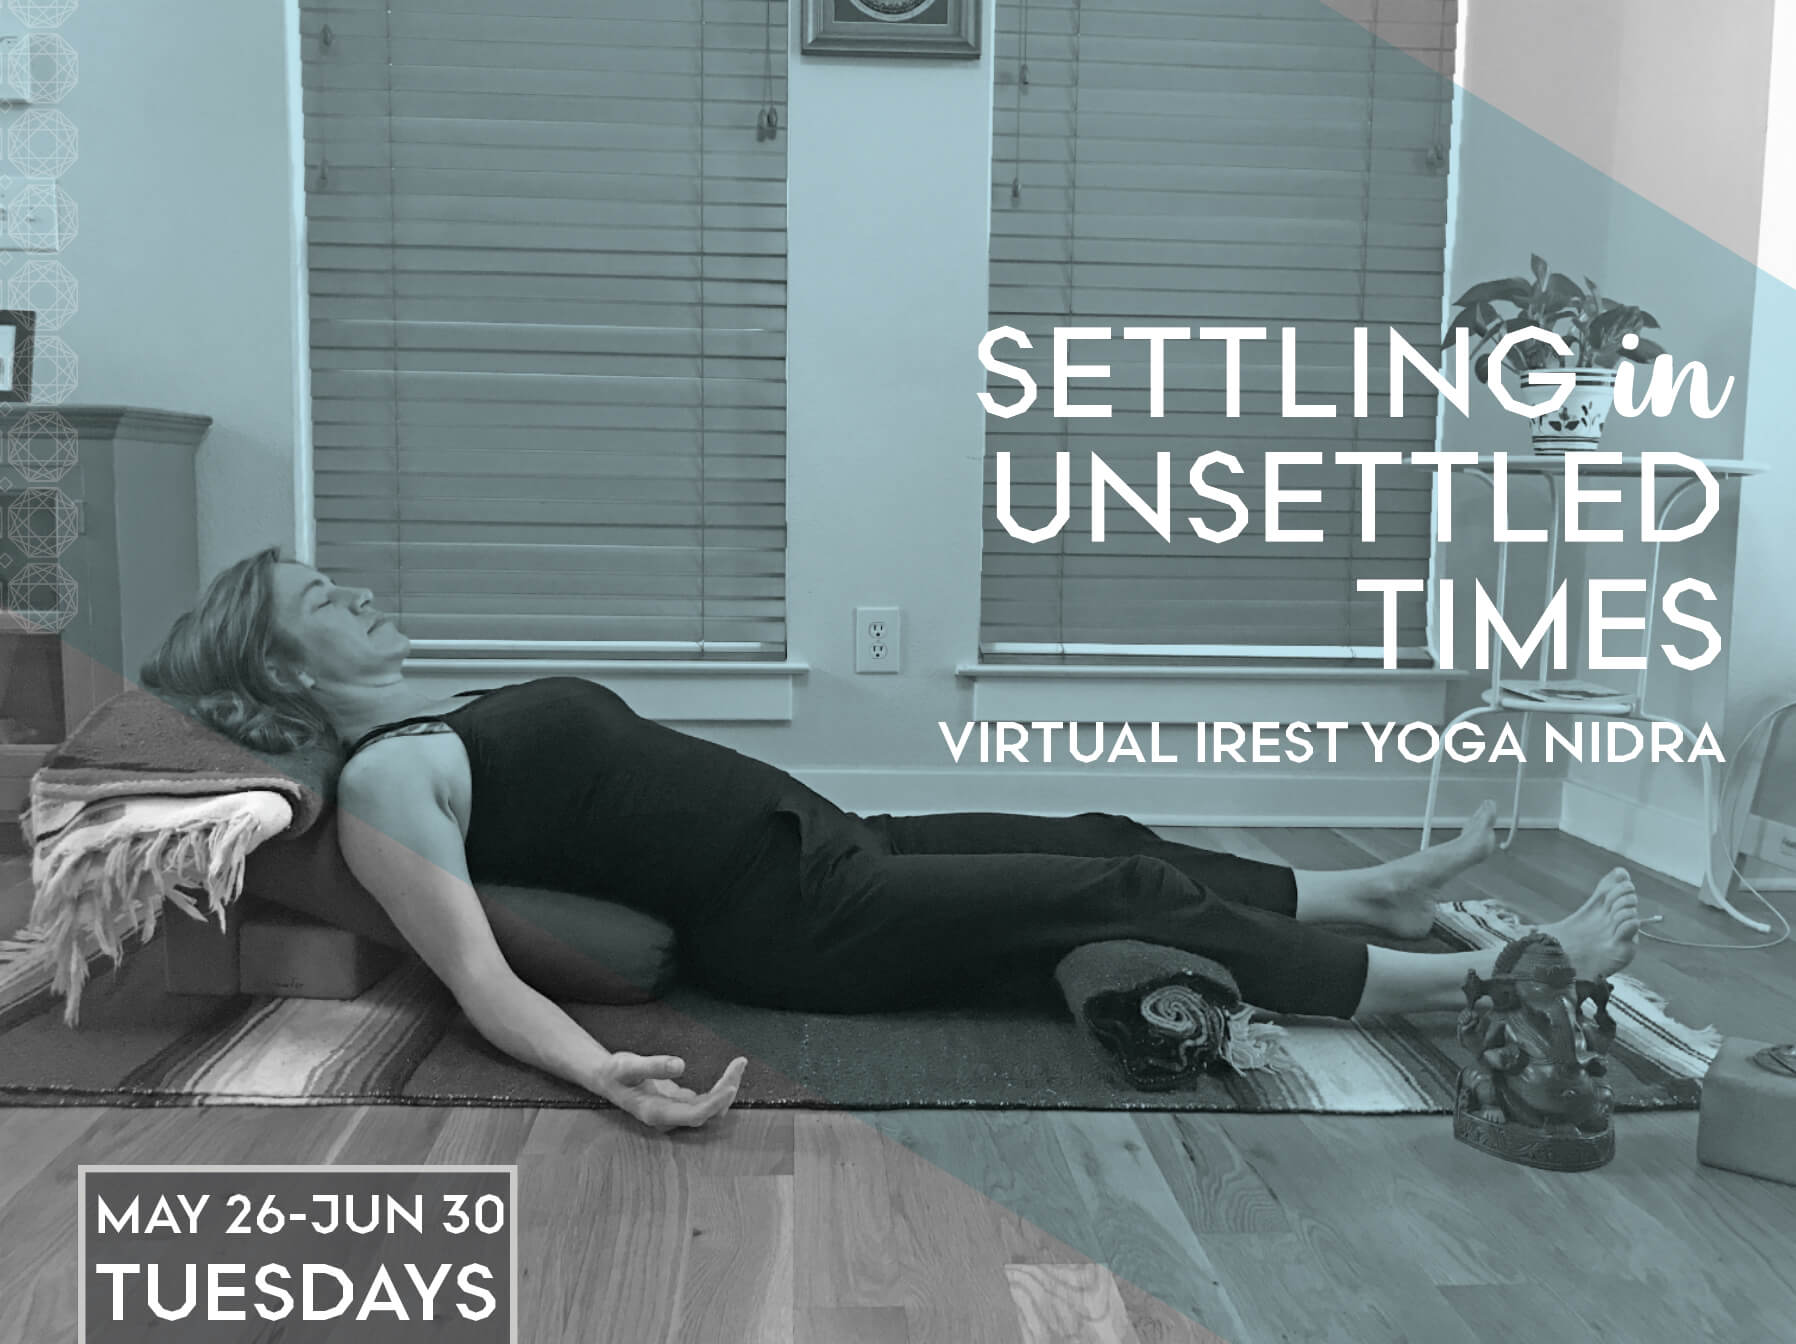 Settling in Unsettled Times: Virtual iRest Yoga Nidra Series